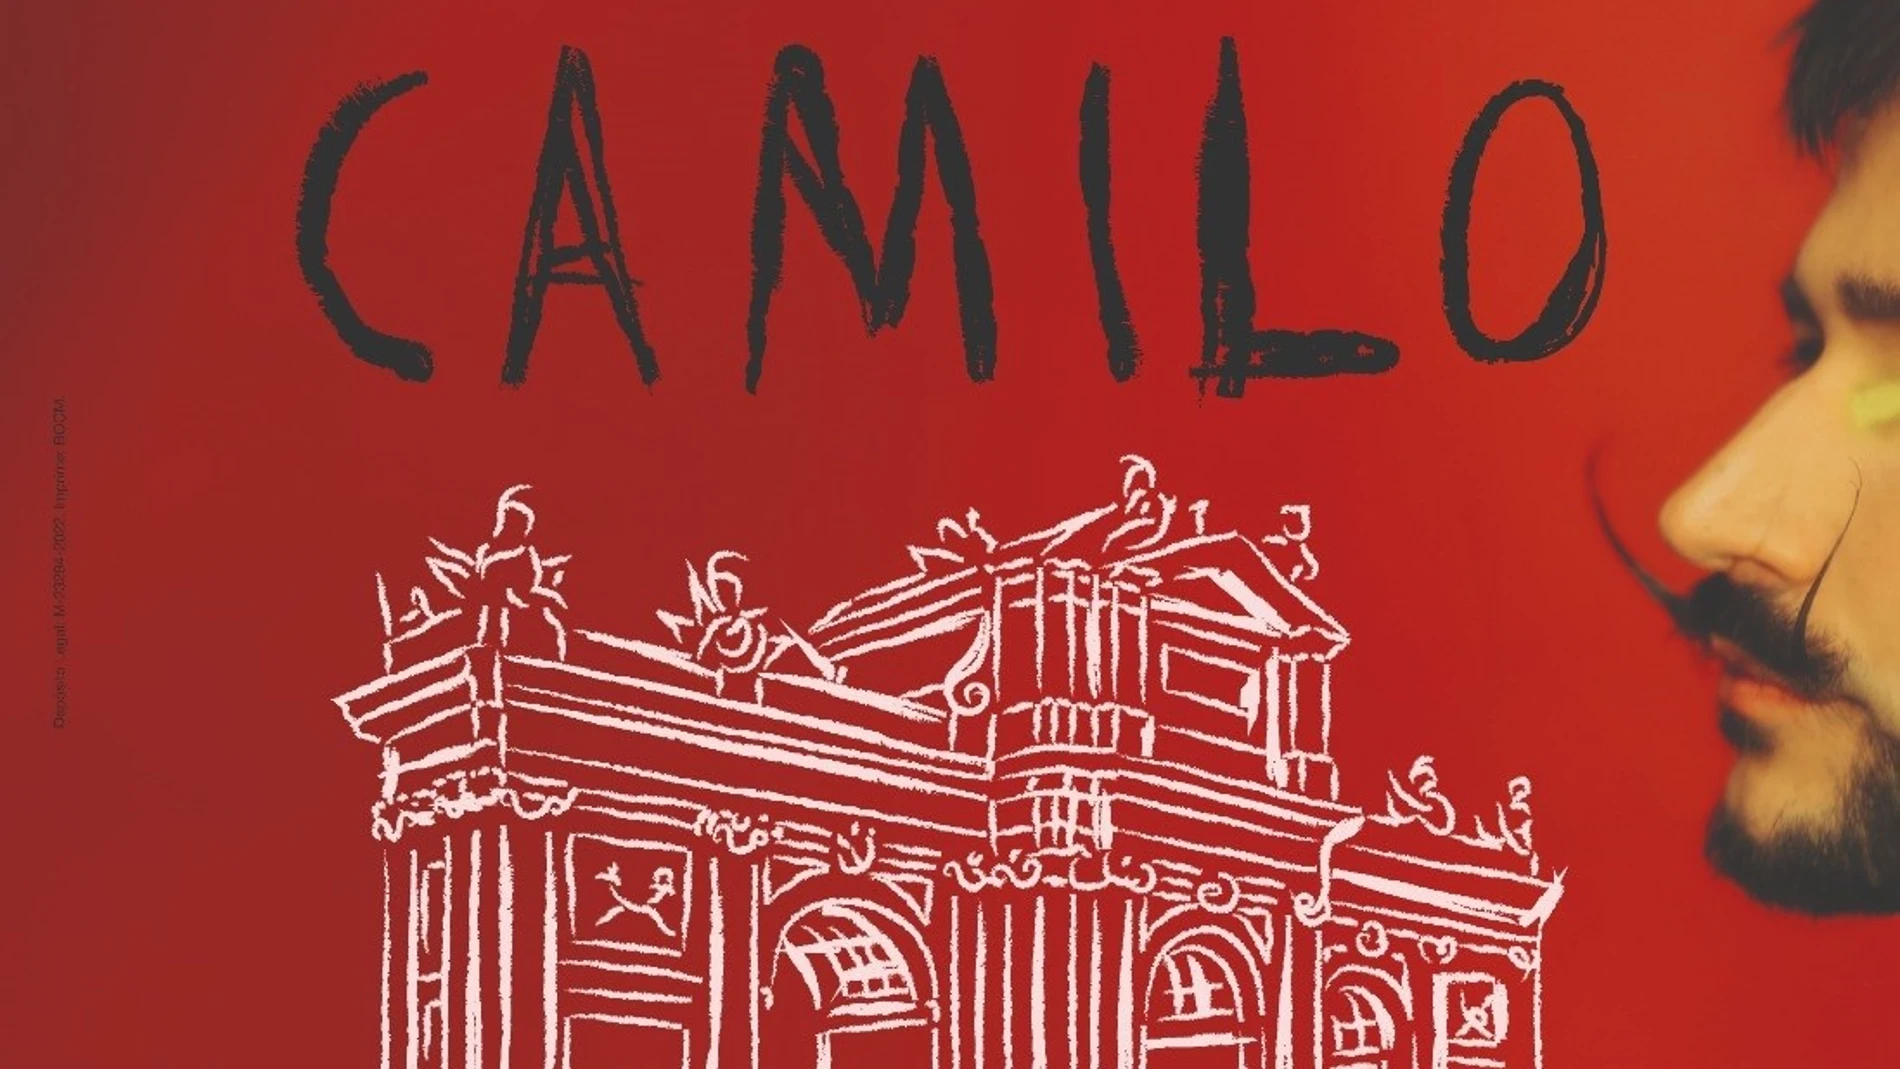 Cartel del concierto de Camilo en Madrid en Hispanidad 2022COMUNIDAD DE MADRID13/09/2022